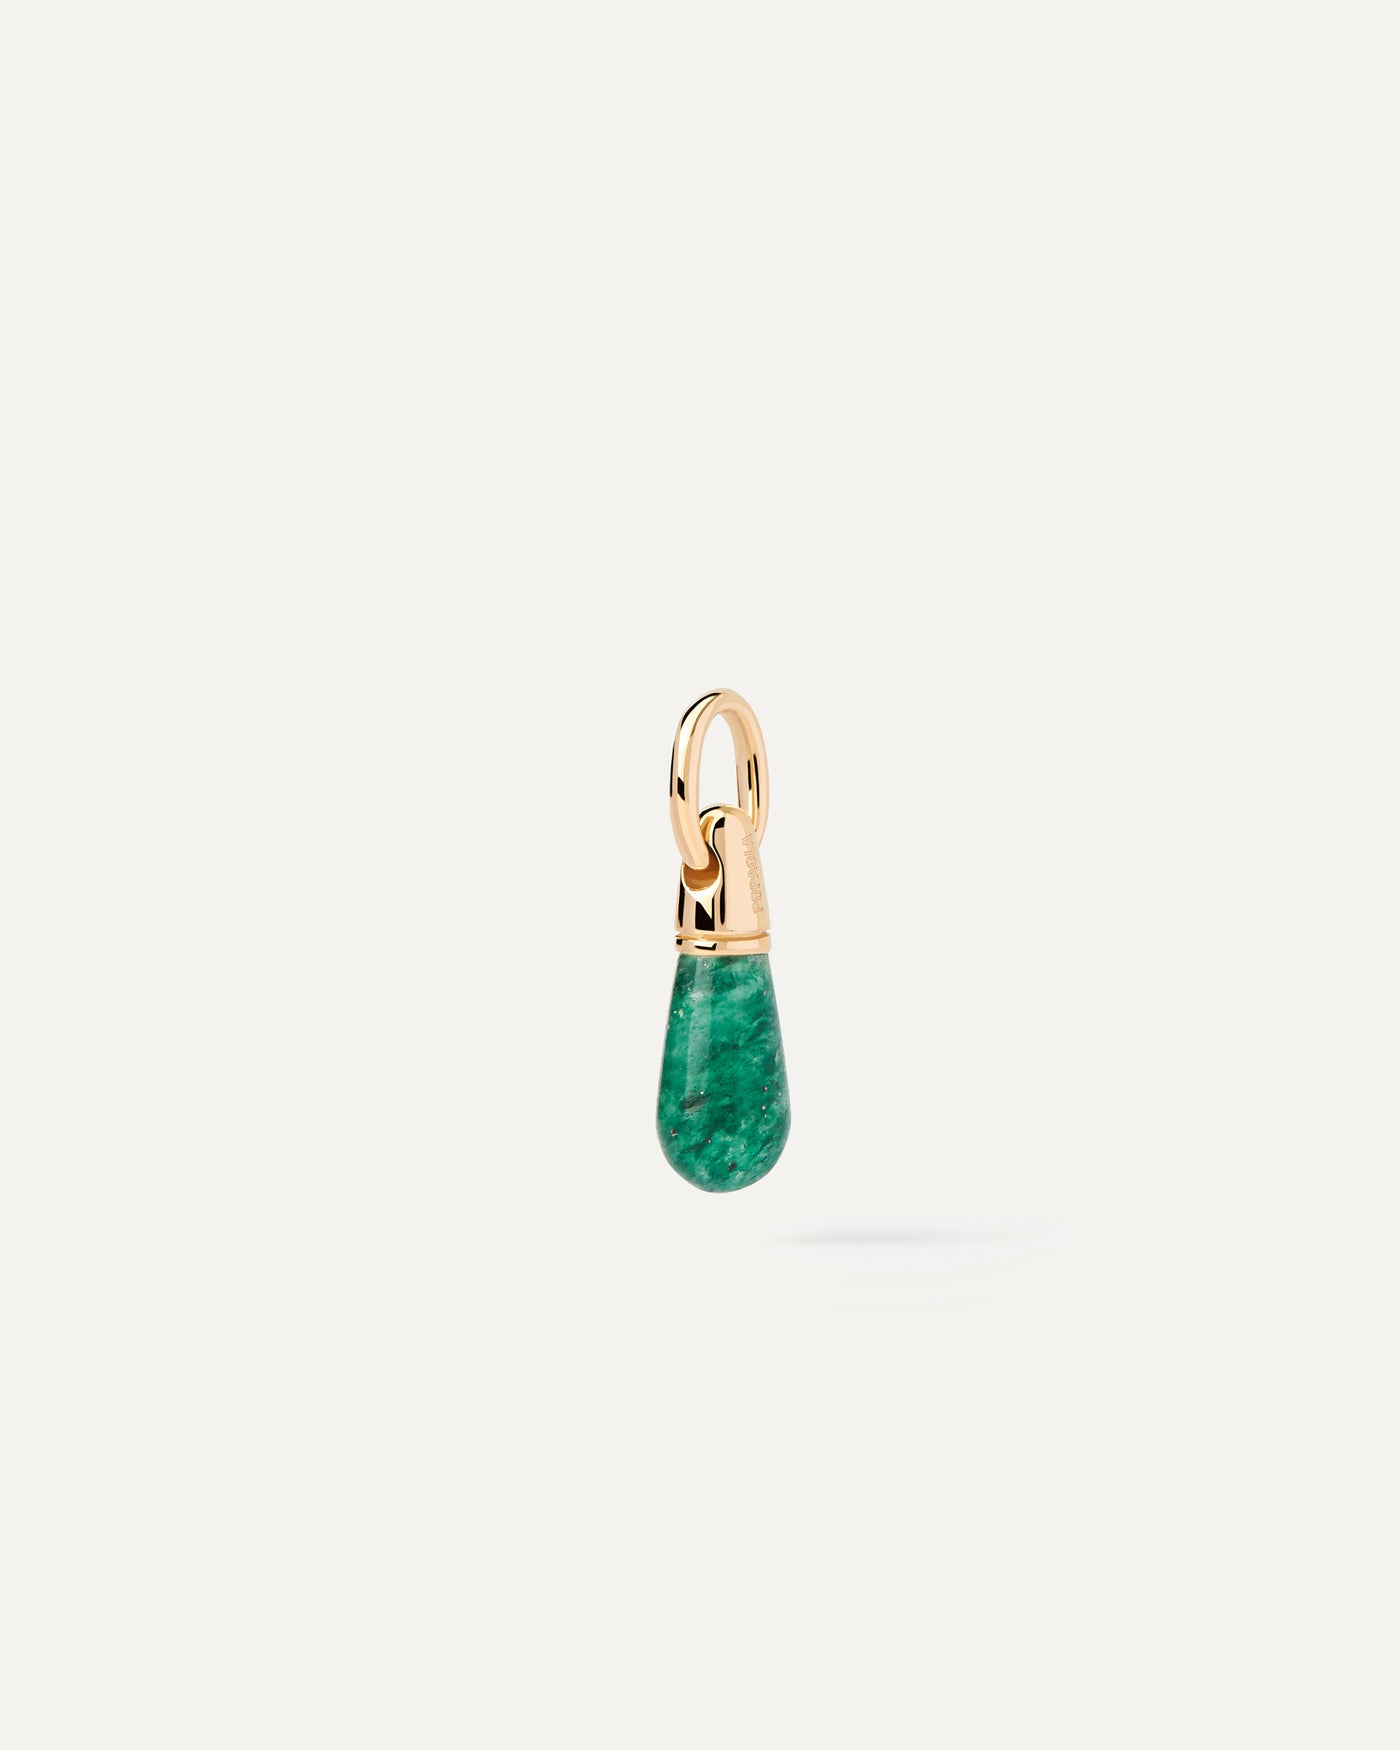 Pendentif Aventurine Verte Drop. Petit goutte pendentif de pierre verte à personnaliser pour collier ou boucles d'oreilles. Découvrez les dernières nouveautés de chez PDPAOLA. Commandez et recevez votre bijou en toute sérénité.